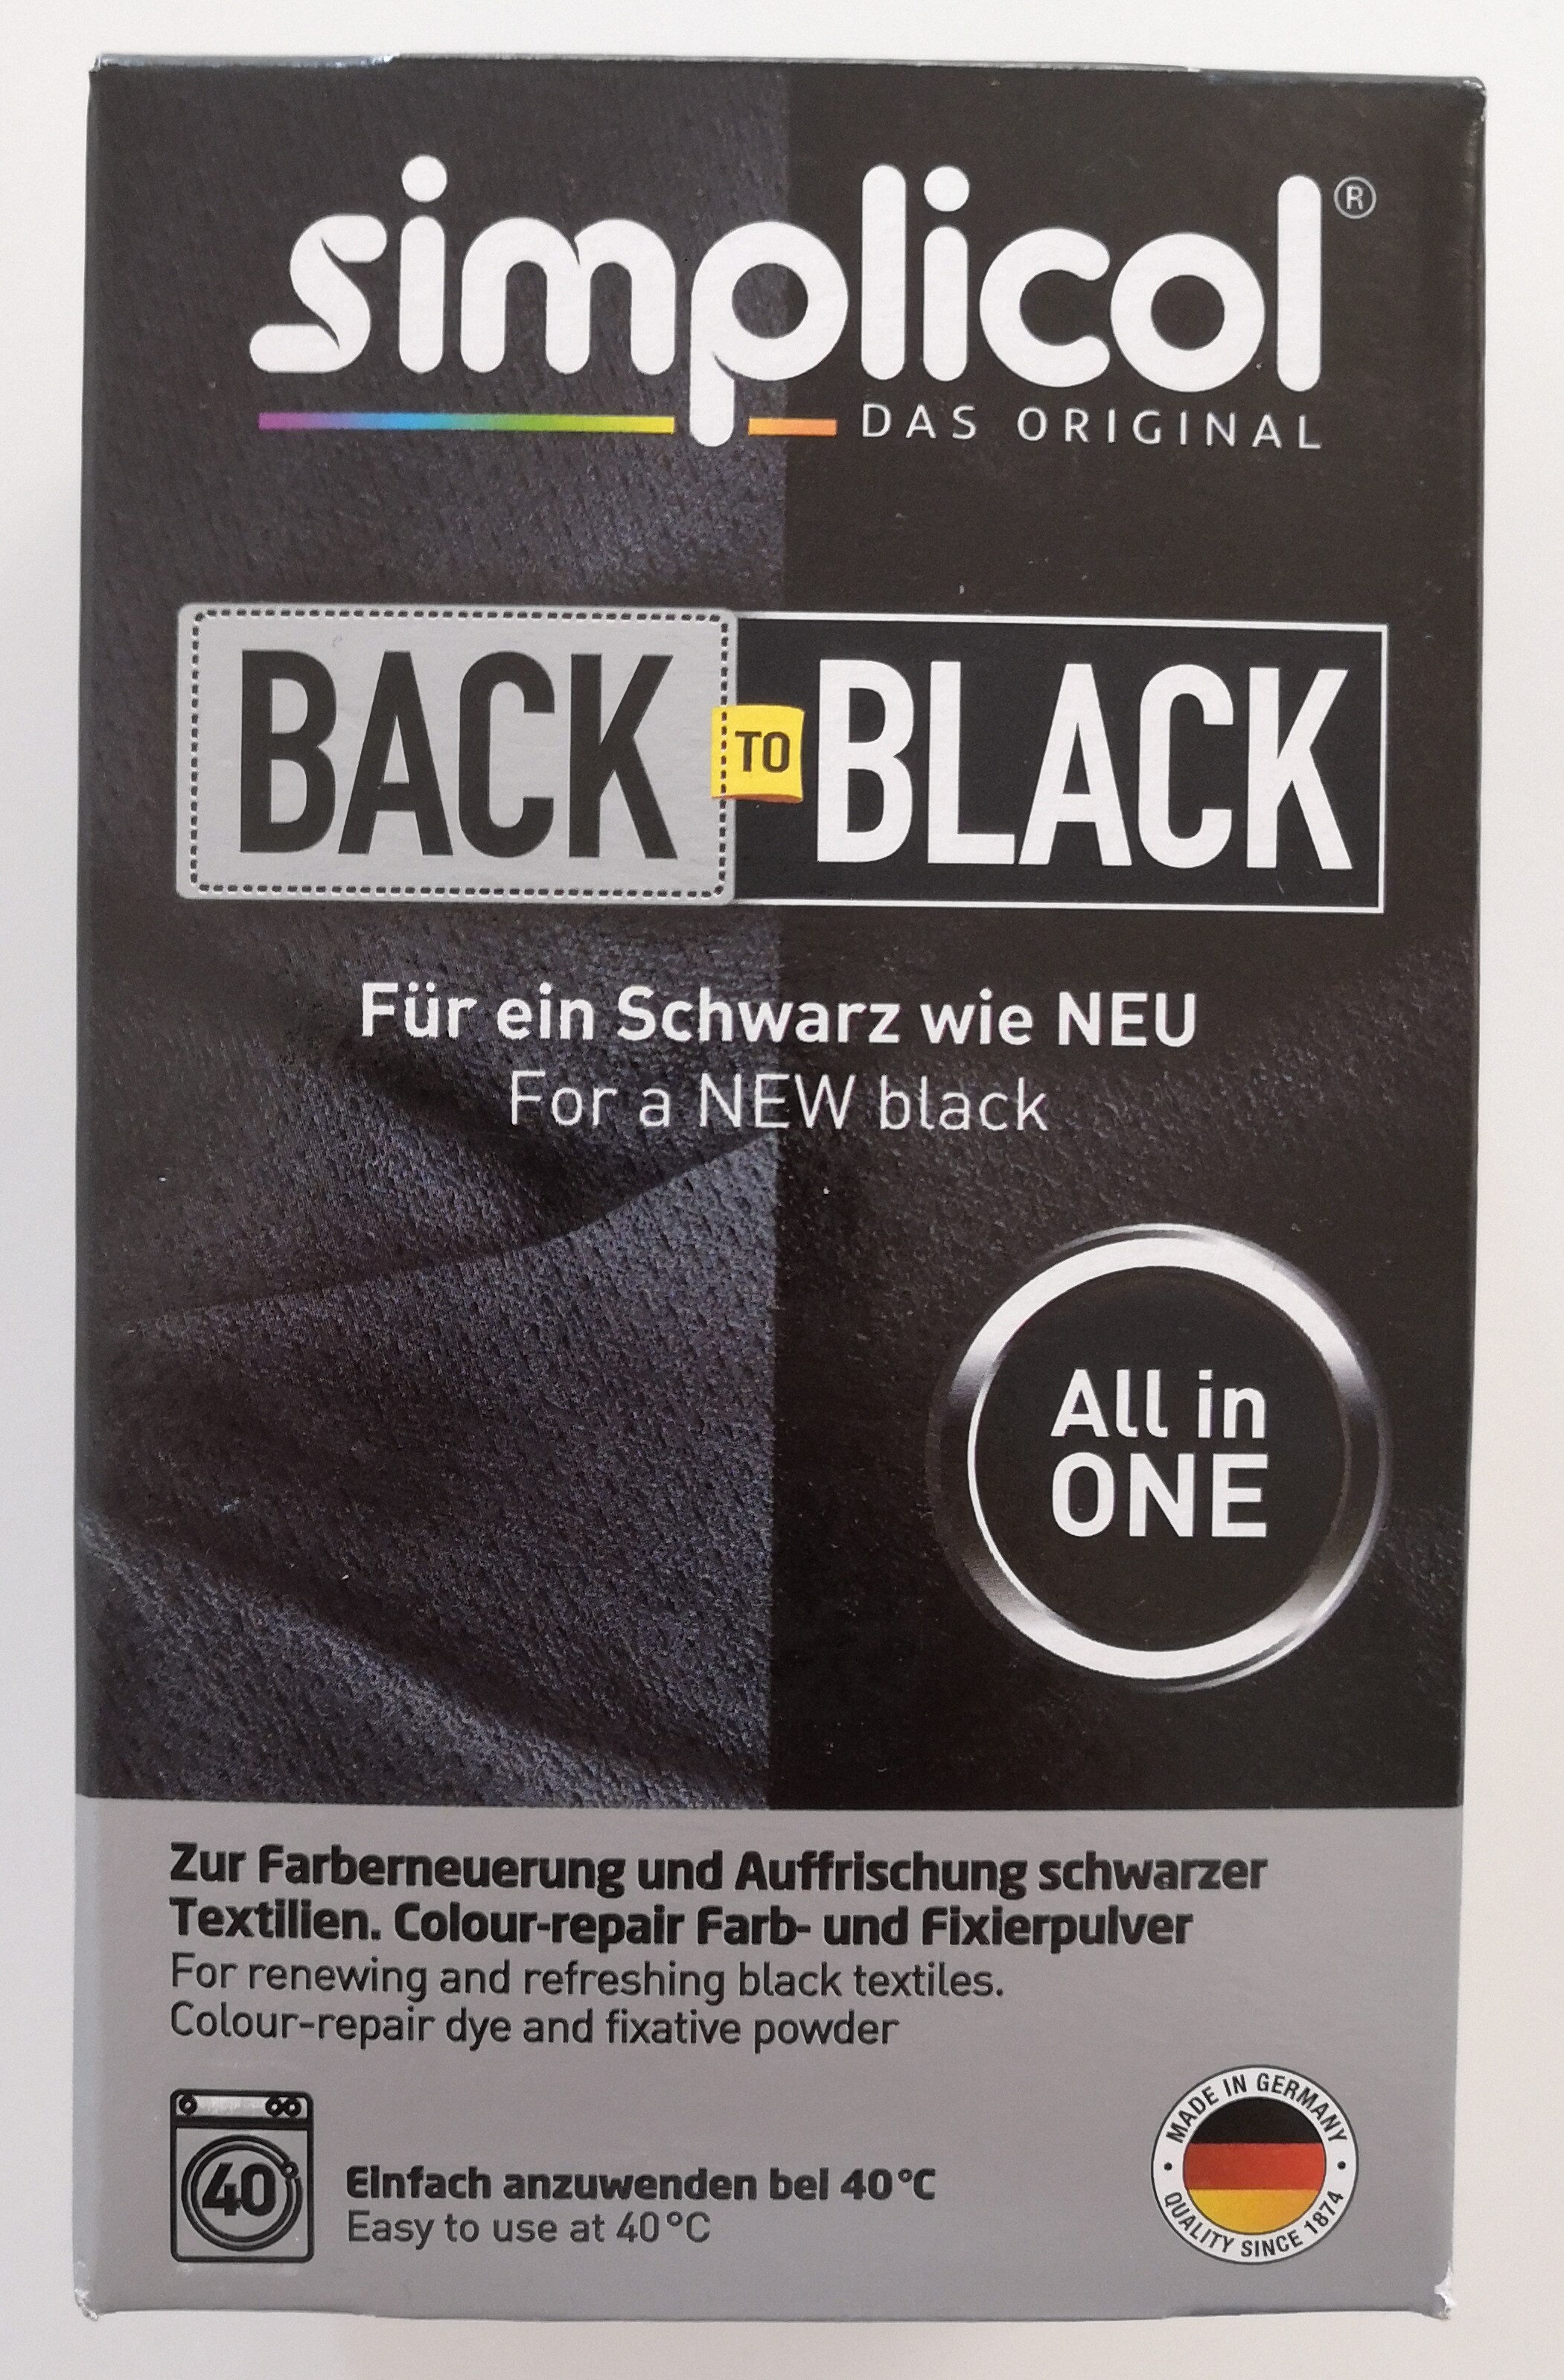 Back-To-Black - Produit - de